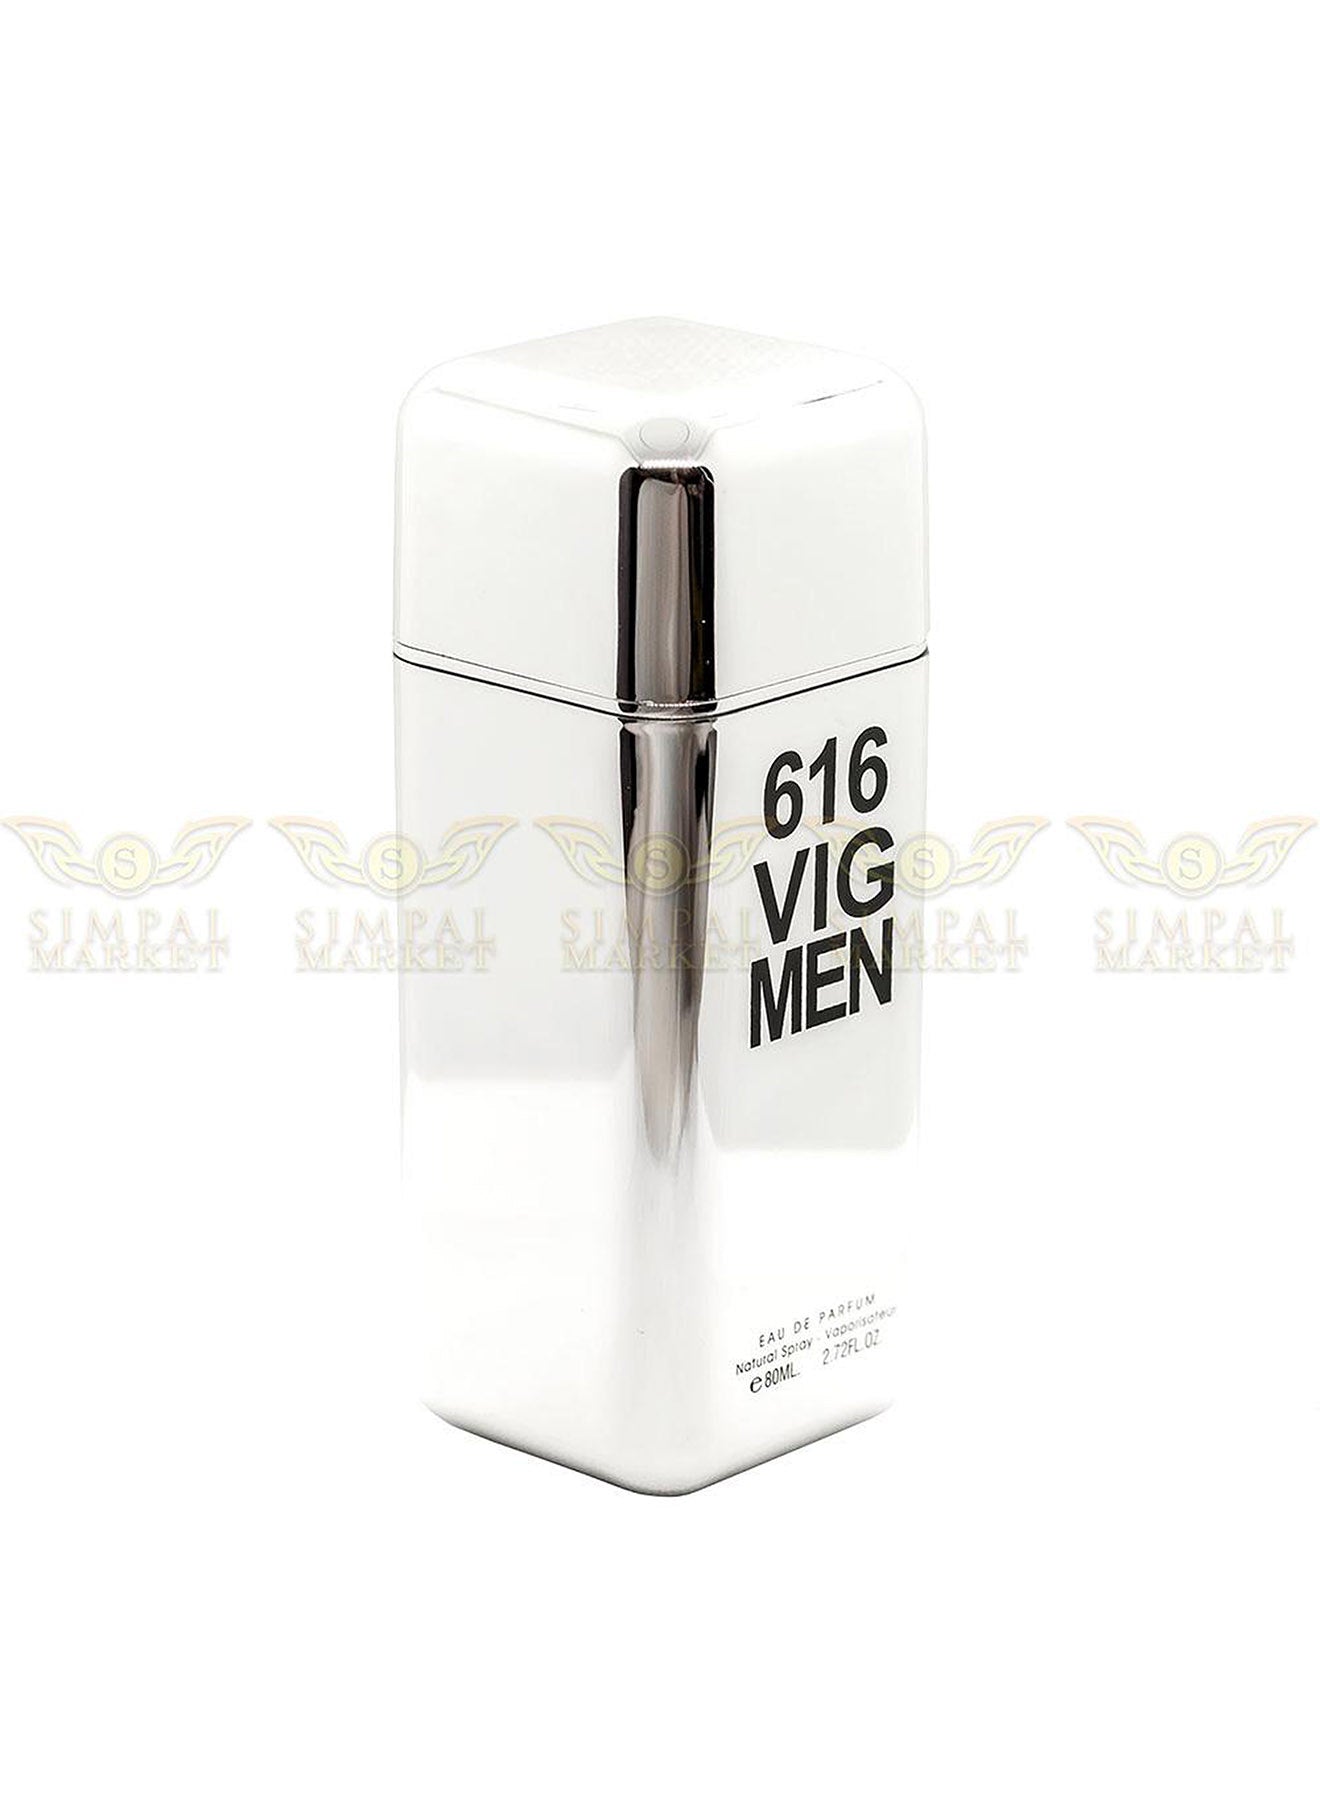 616 VIG MEN Eau De Parfum Spray 80ml Value Pack of 12 